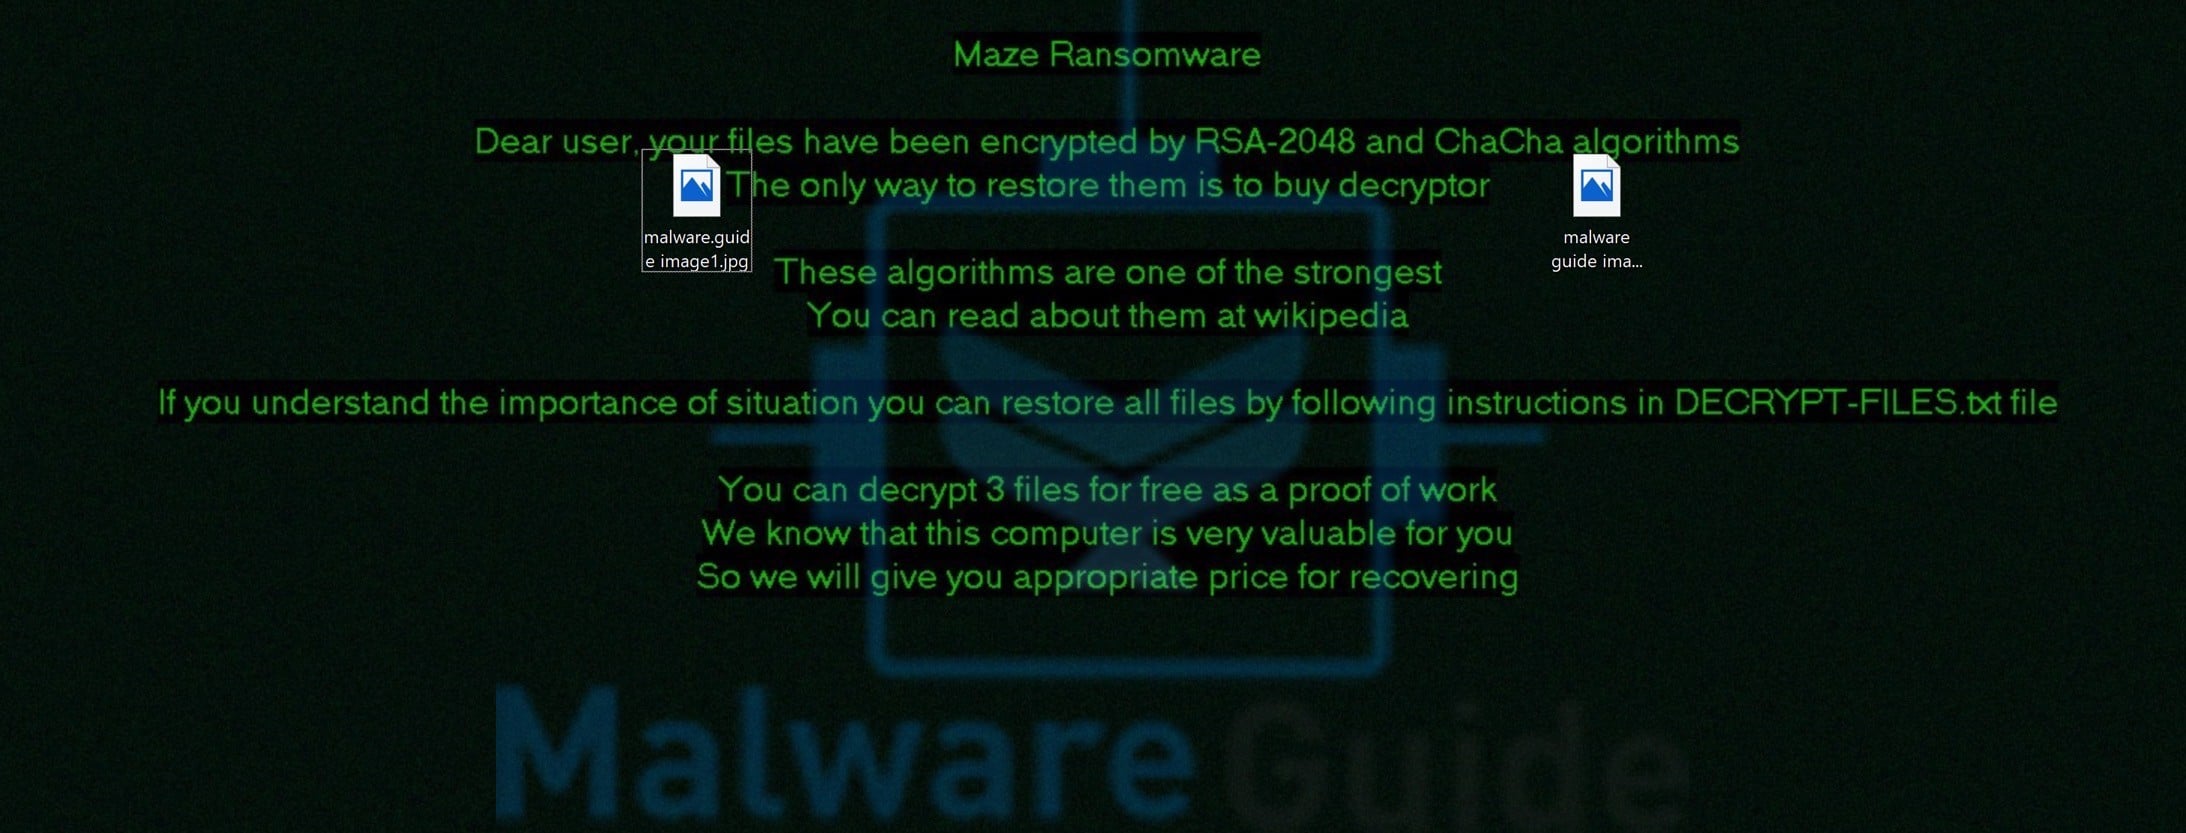 maze ransomware